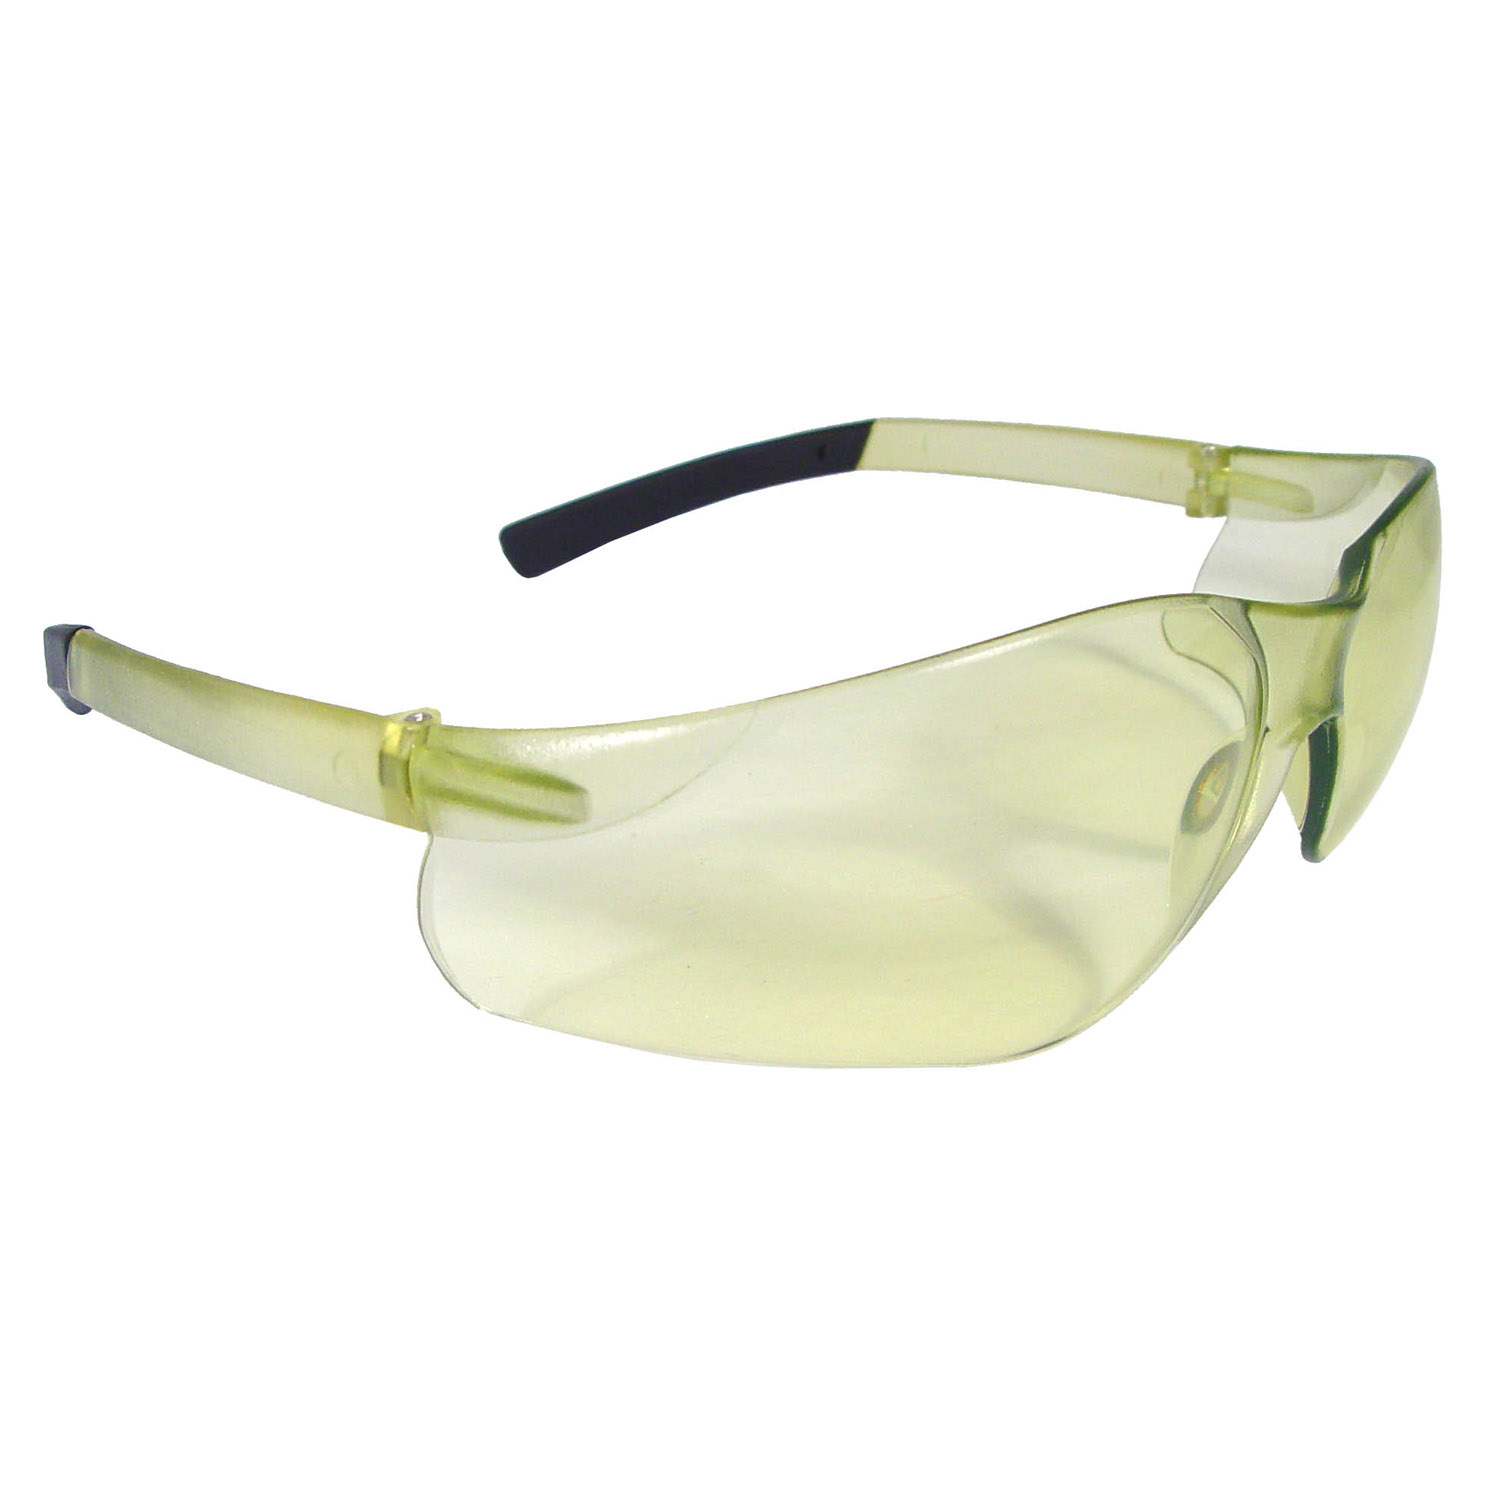 Rad-Atac™ Safety Eyewear - Low IRUV Frame - Low IRUV Lens